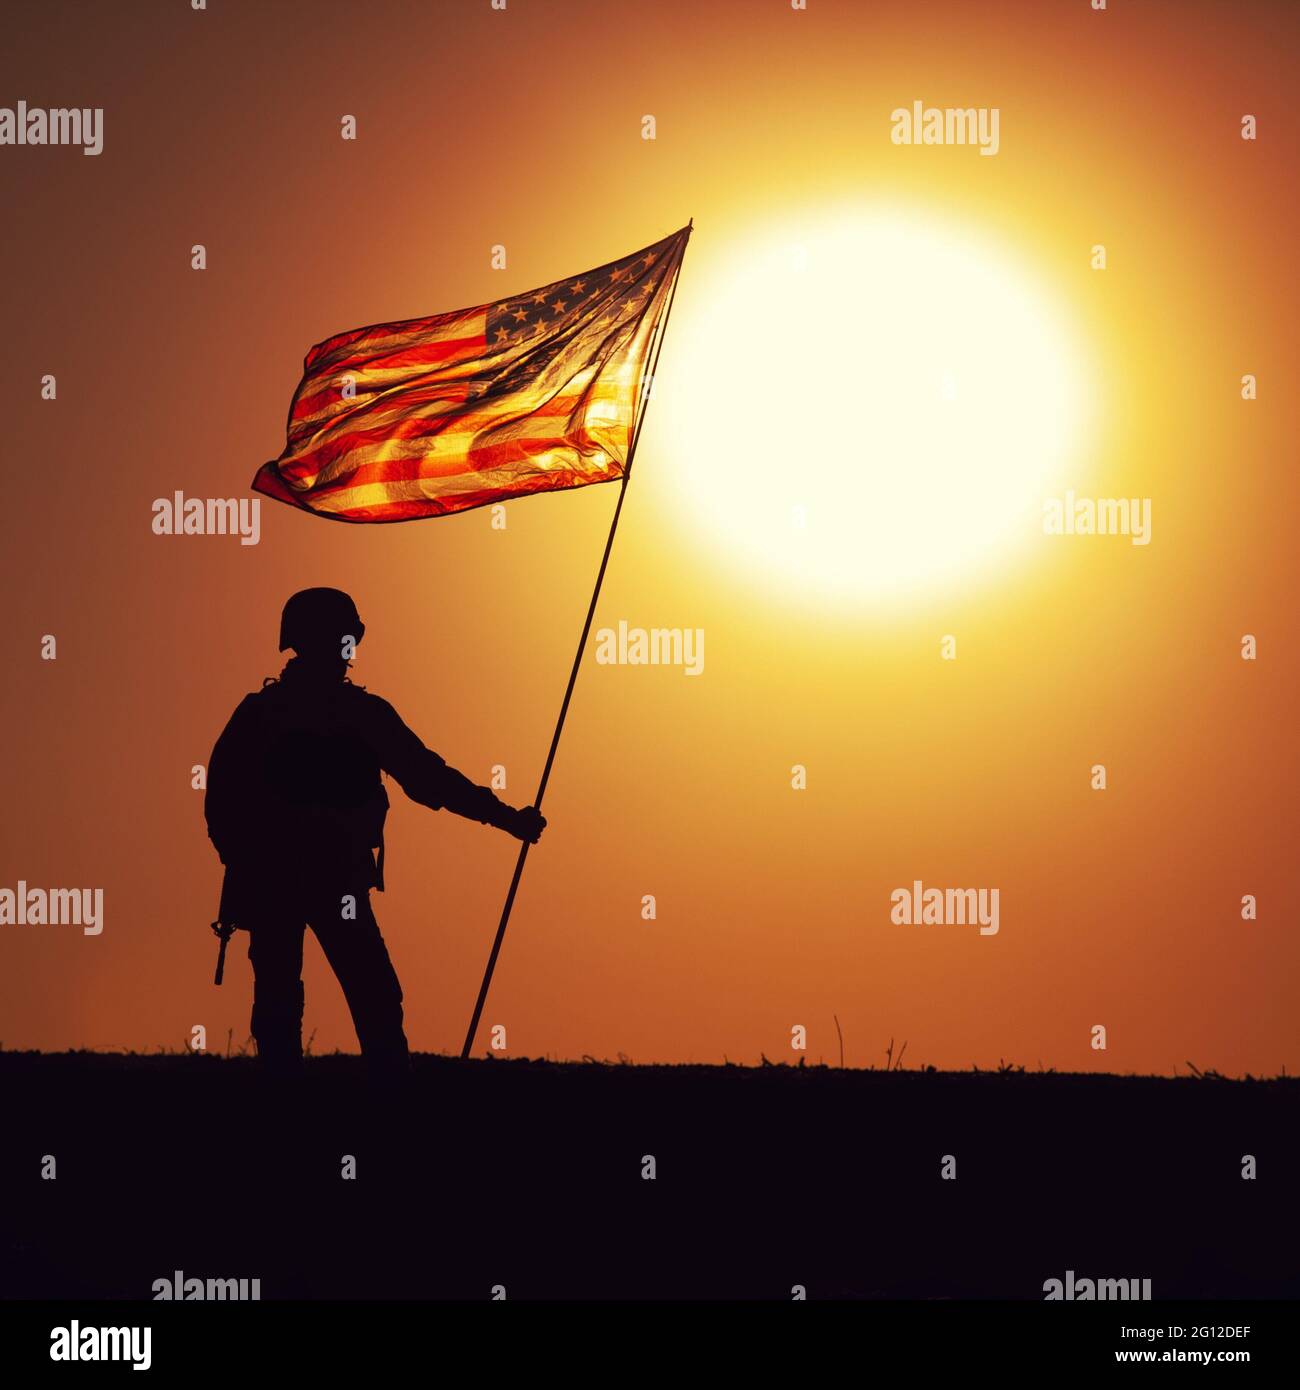 Silueta del soldado de infantería del ejército de los EE.UU., caza del Cuerpo de Marines de los Estados Unidos de pie en el horizonte de la puesta de sol con ondear la bandera nacional de los EE.UU. Soldados Foto de stock